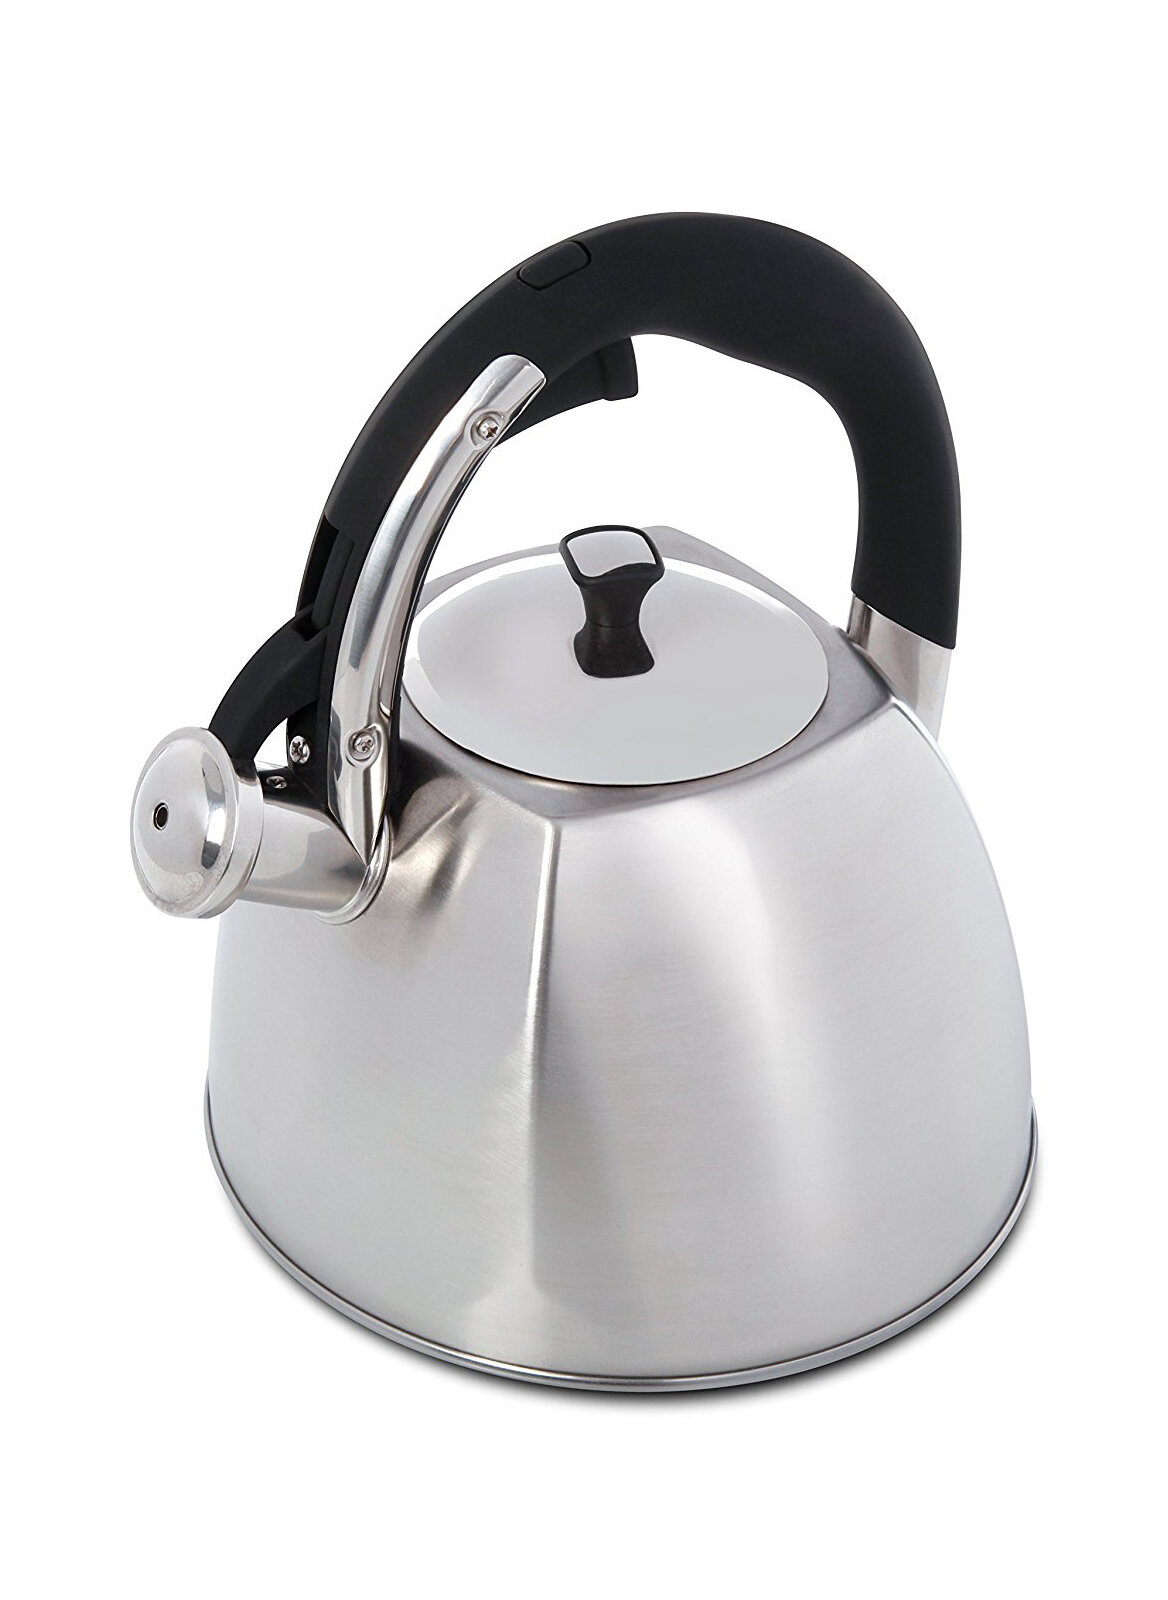 mr coffee tea kettle